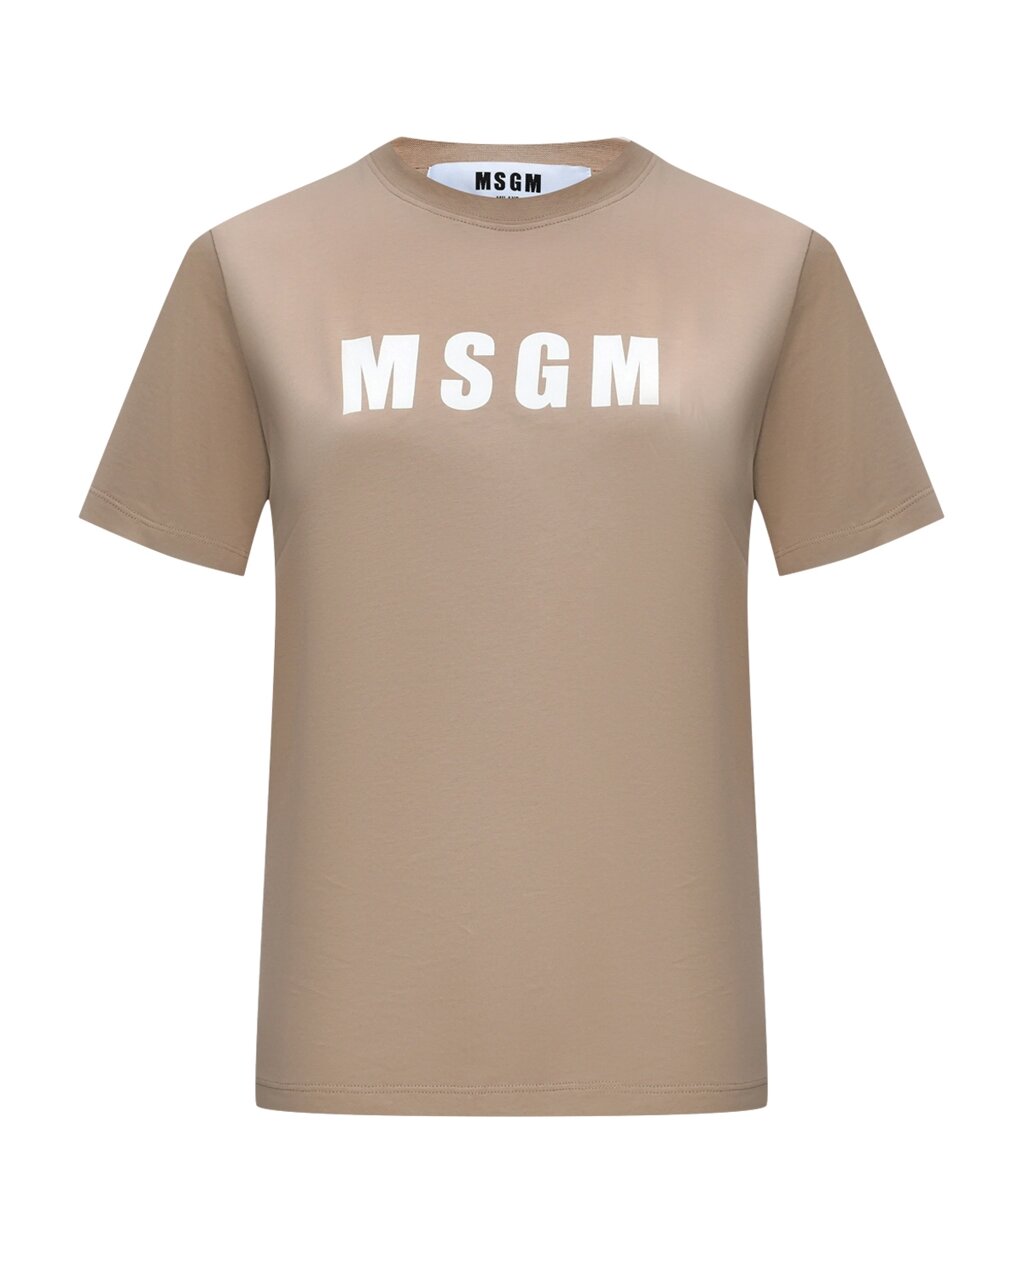 Базовая футболка с лого MSGM от компании Admi - фото 1